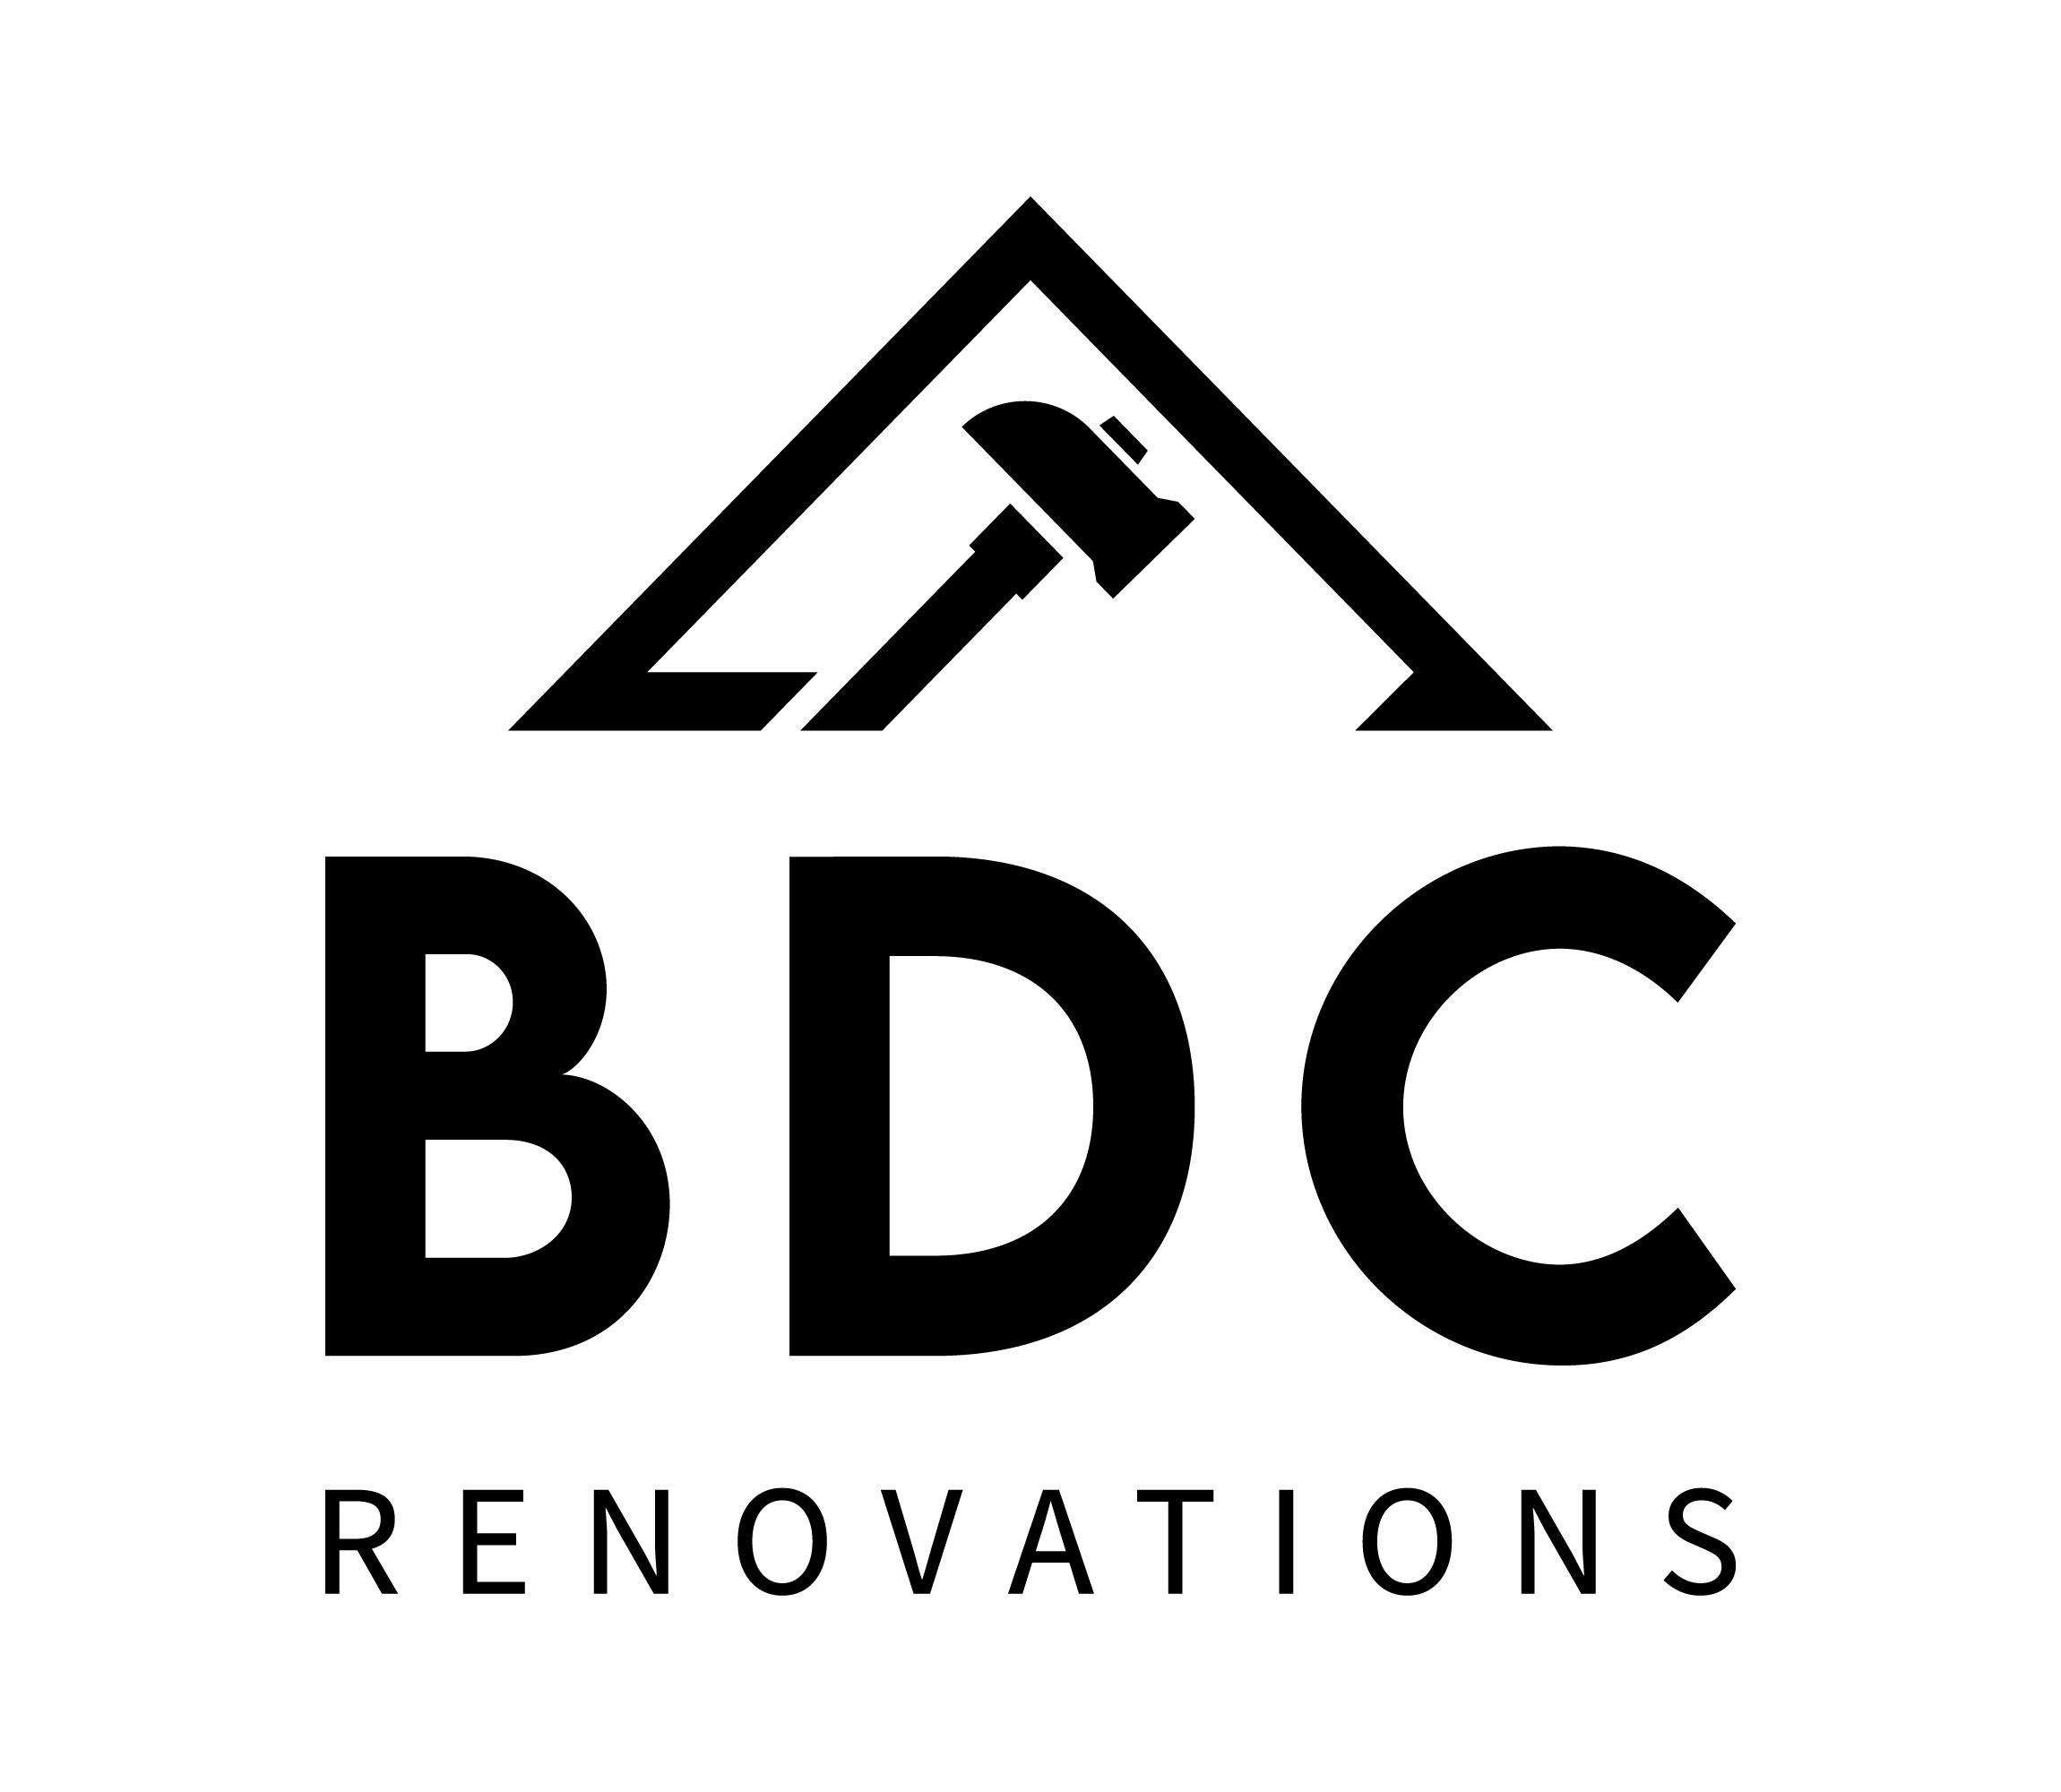 BDC renovations 's logo